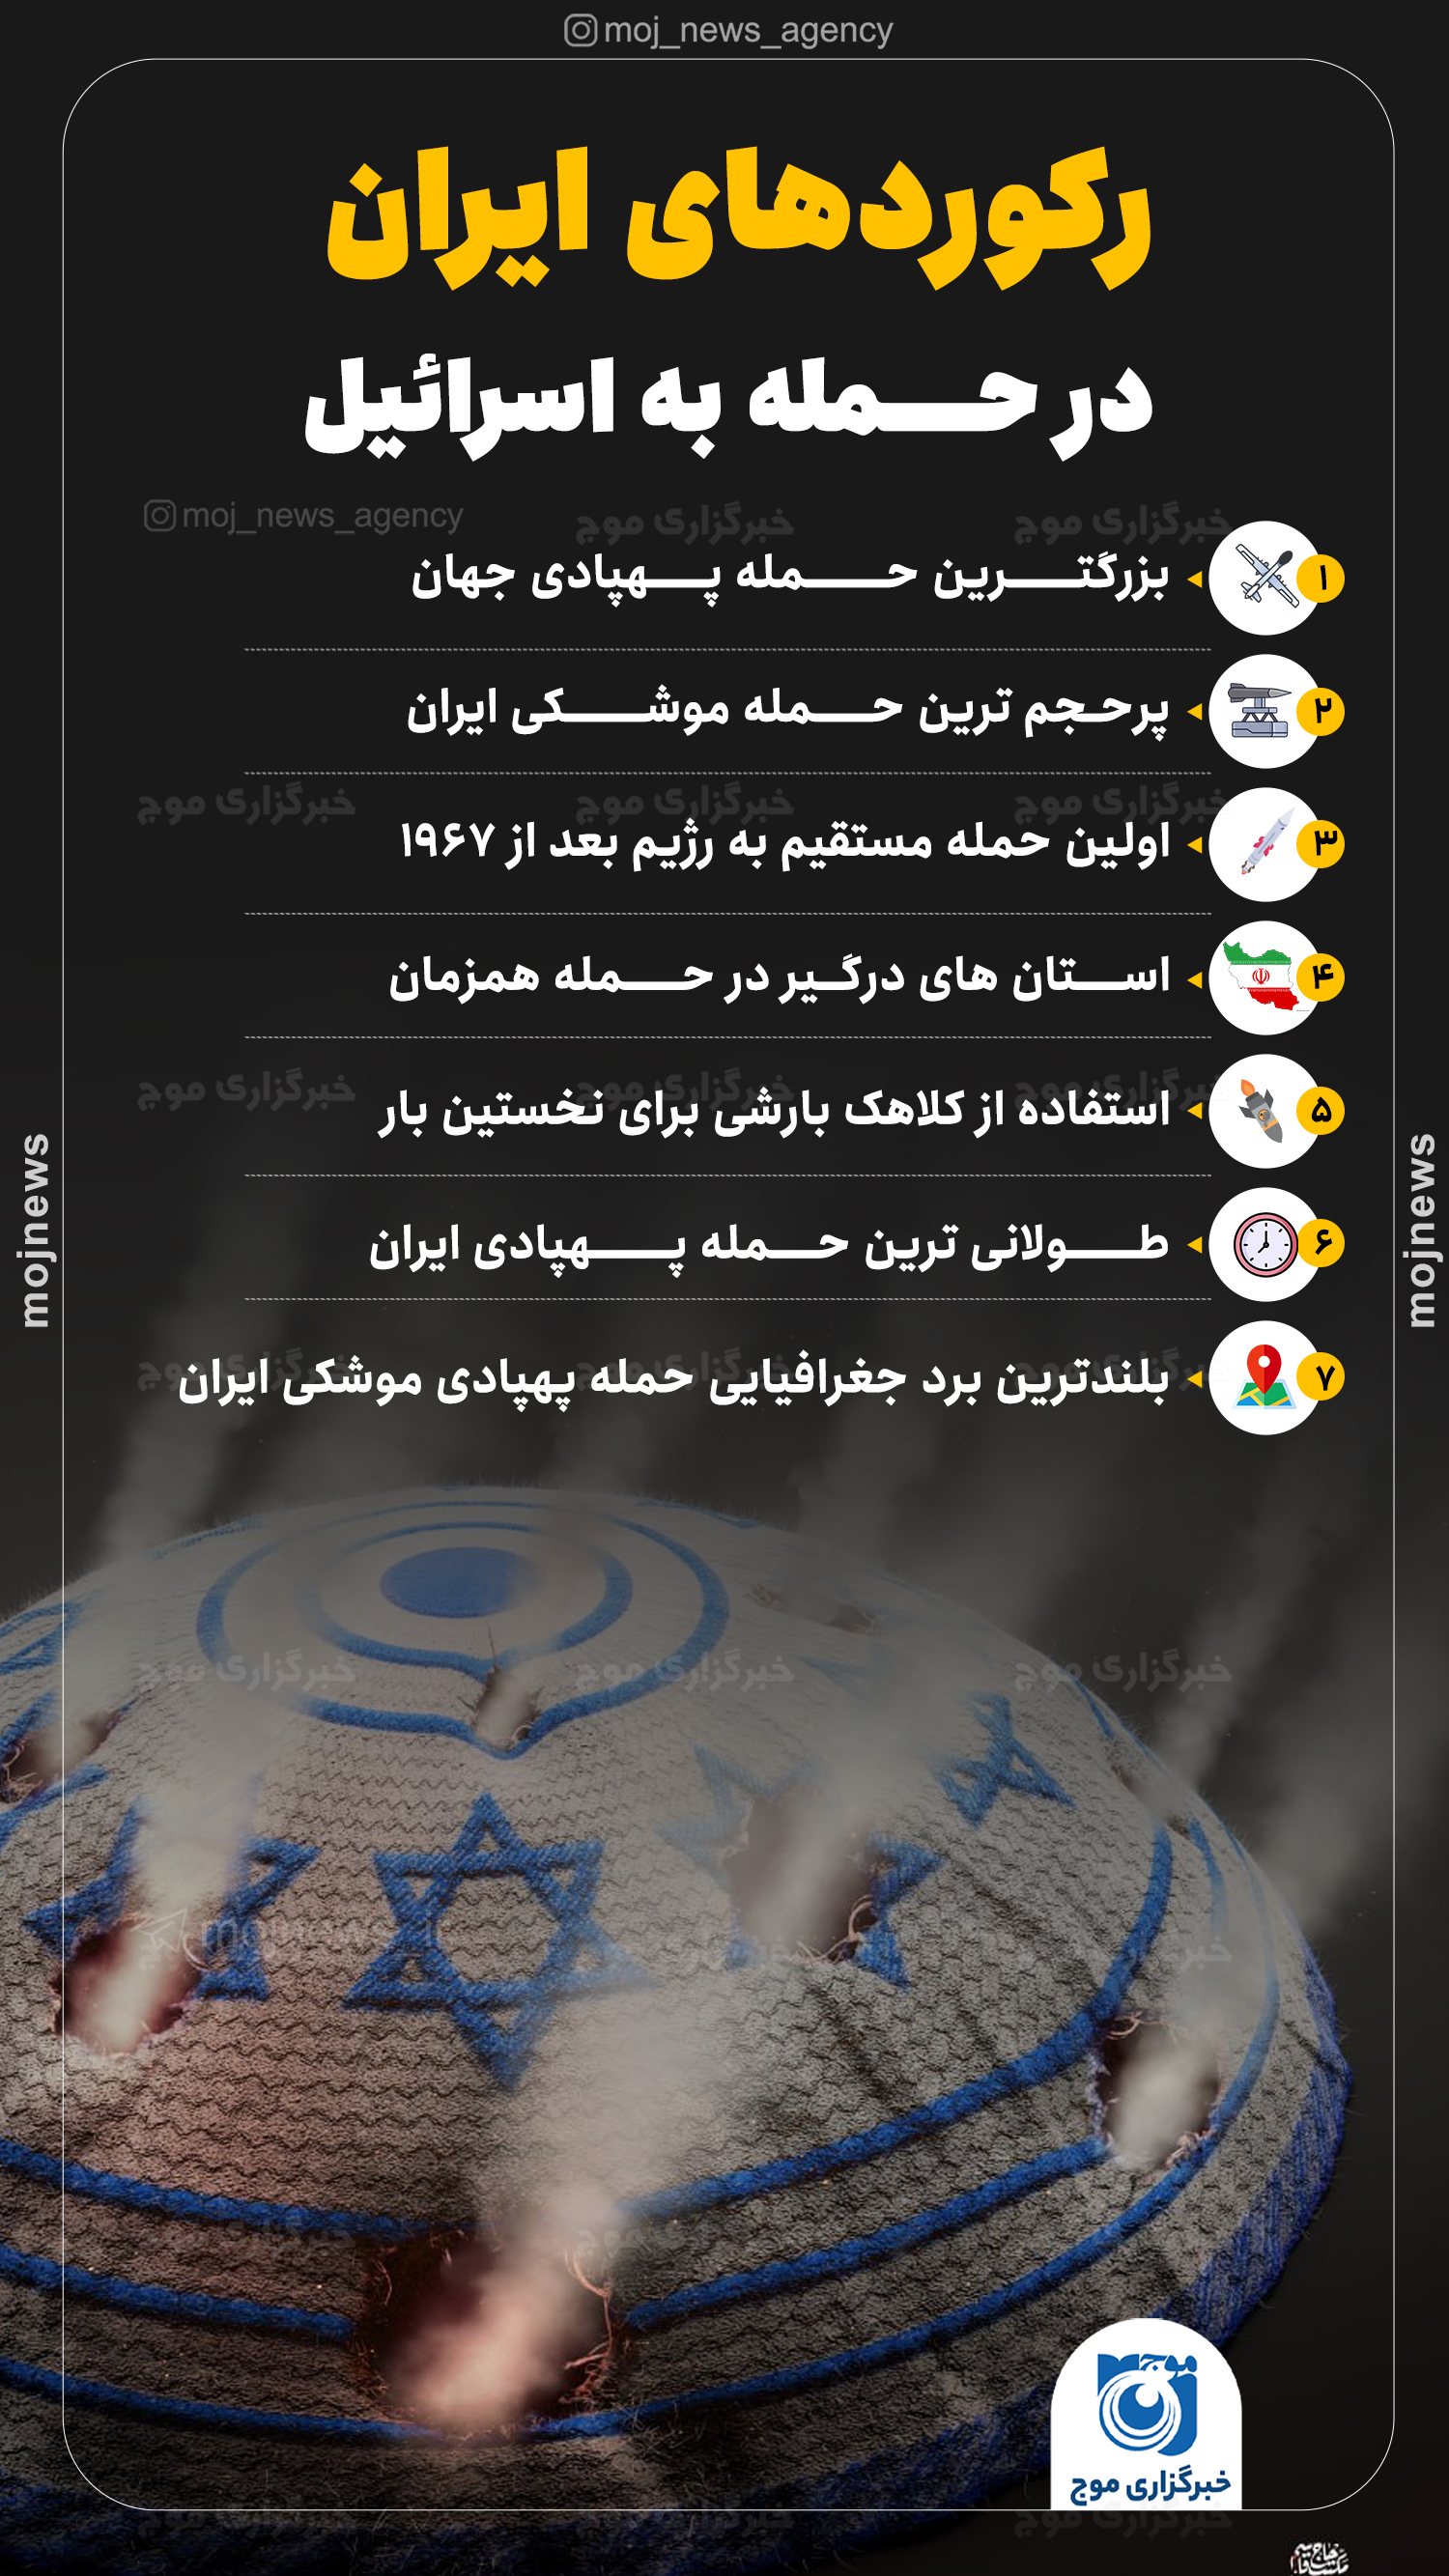 رکوردهای نیروهای مسلح جمهوری اسلامی ایران در حمله به اسرائیل موج